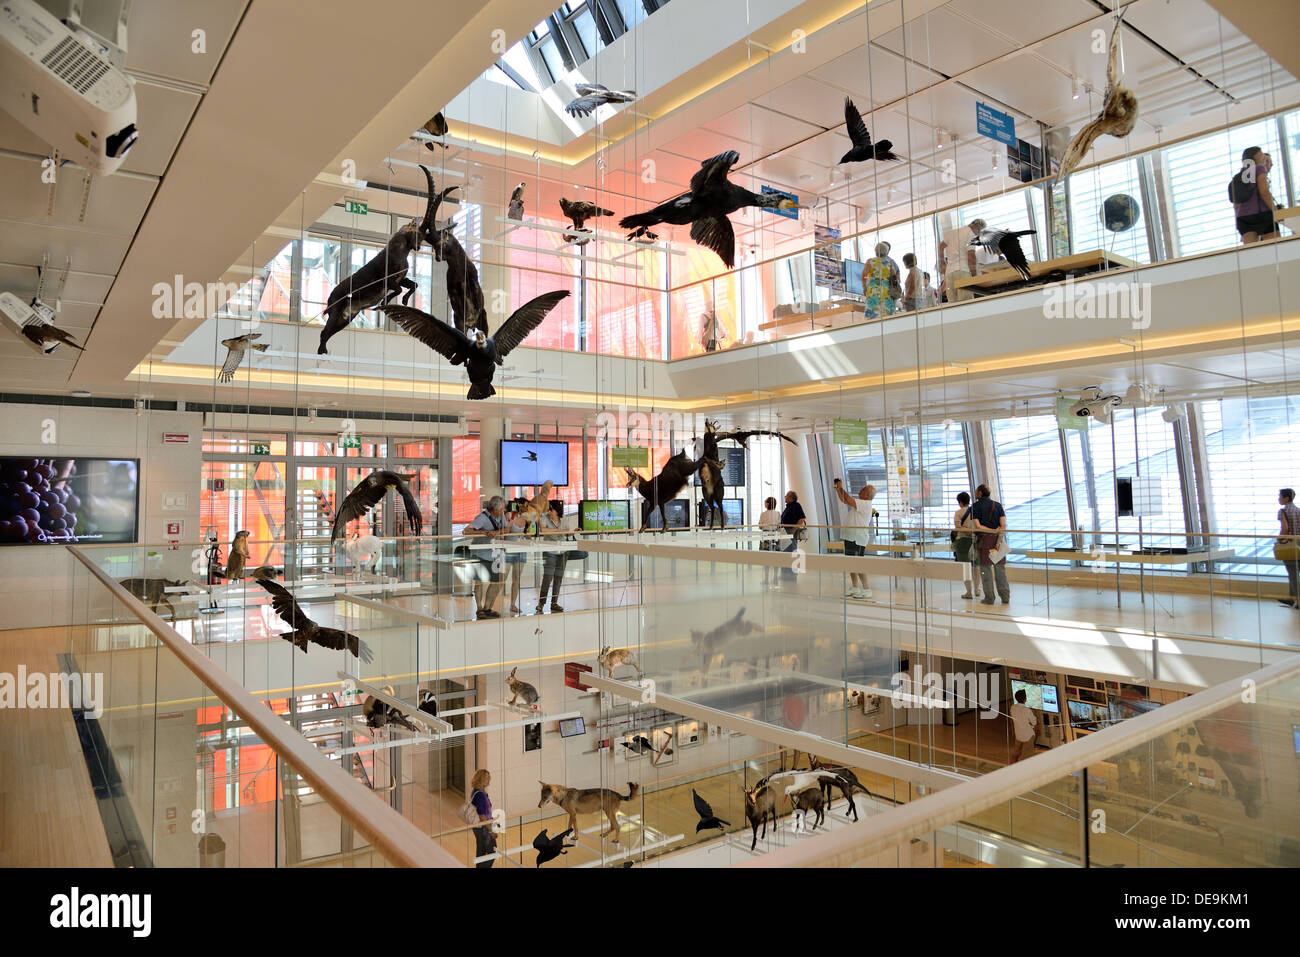 TRENTO, Italia- agosto 6: La Musa, il museo interattivo progettato dall architetto Renzo Piano, è stato inaugurato il 23 luglio 2013. Foto Stock